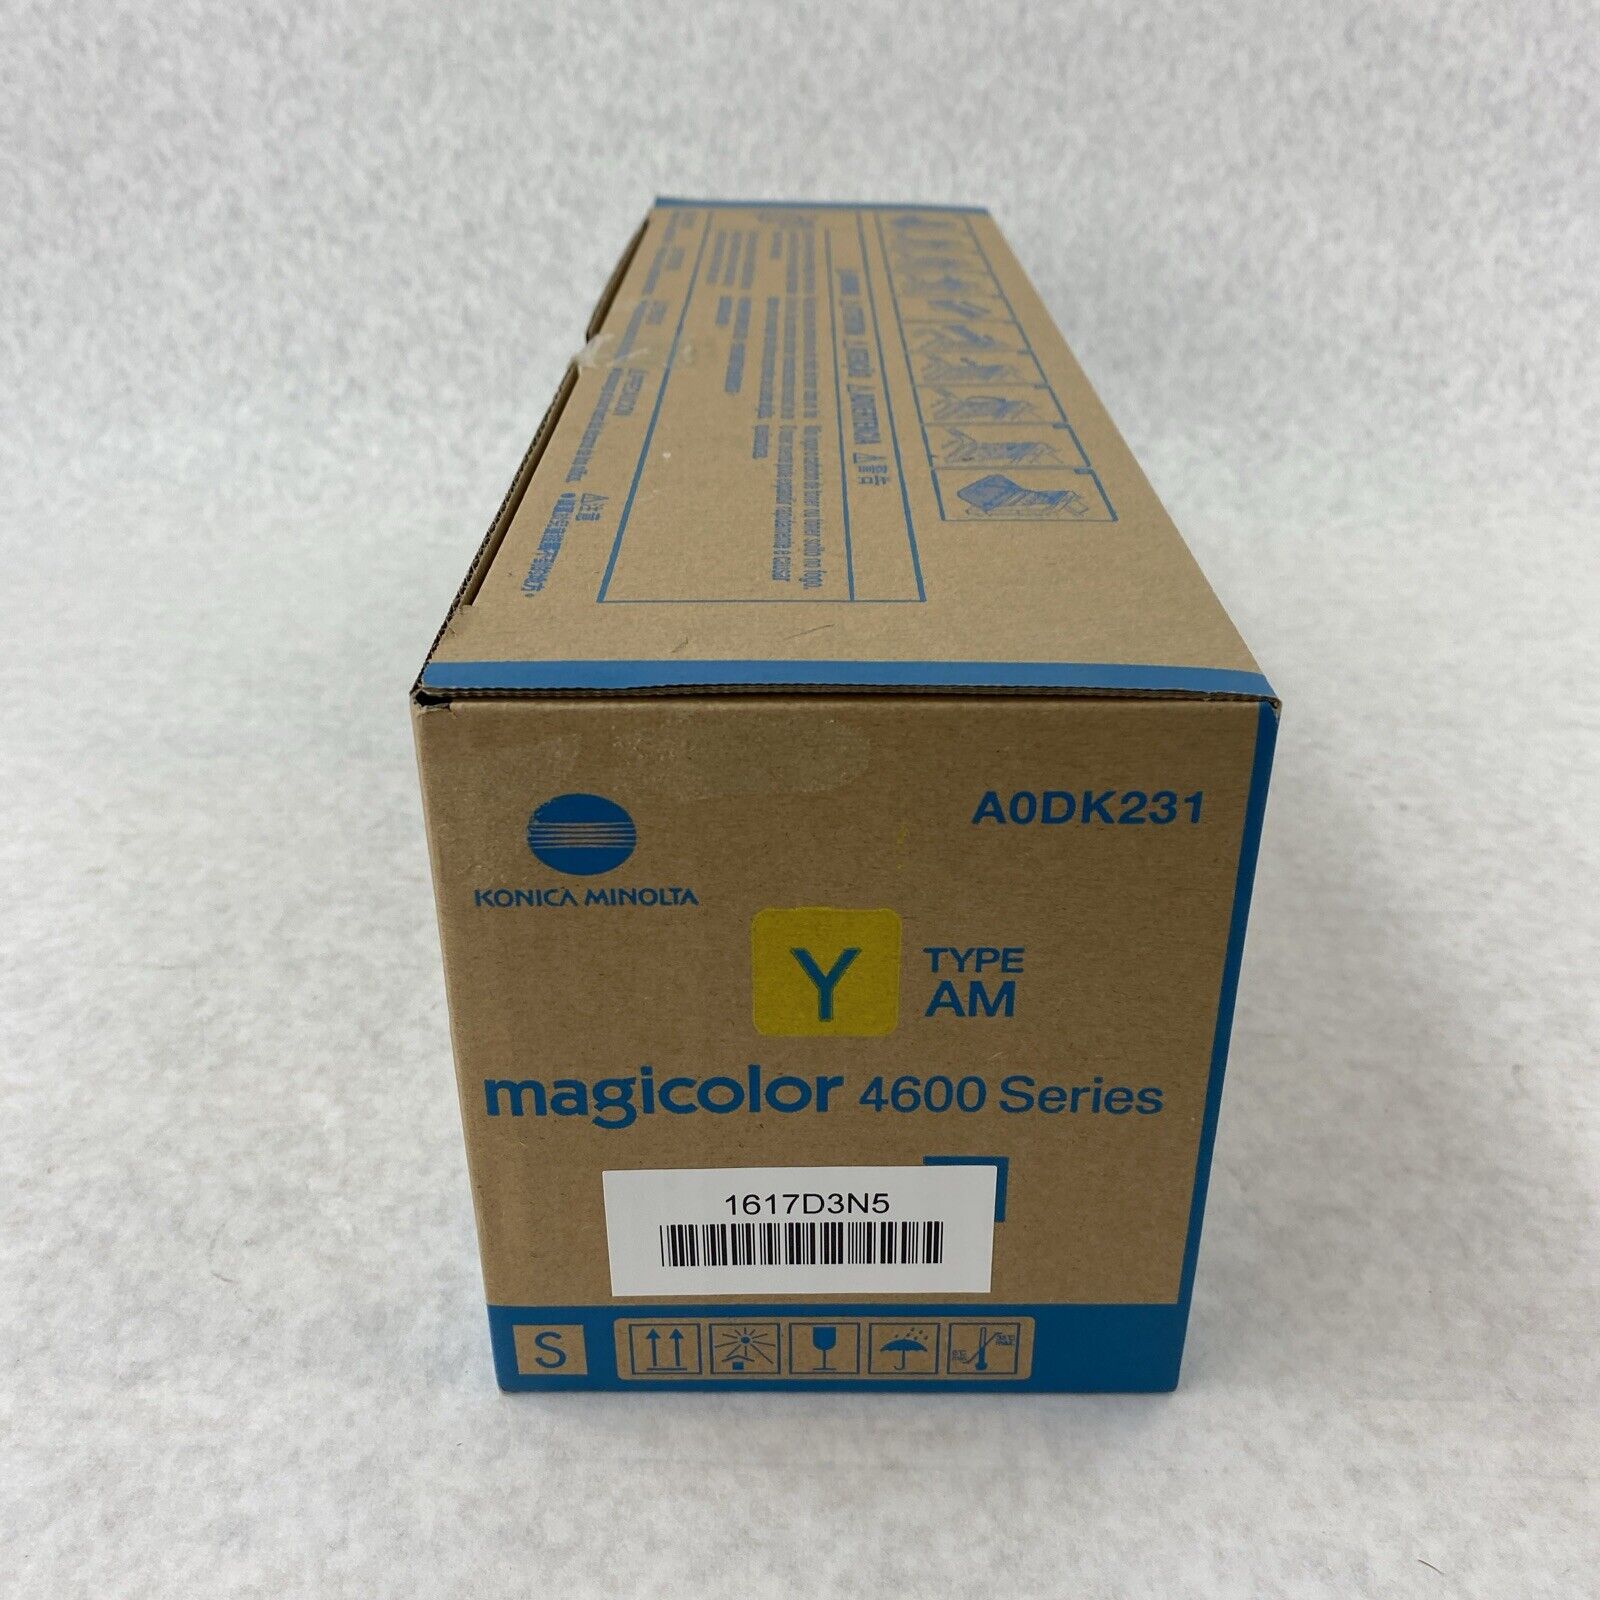 Genuine Konica Minolta A0DK231 Yellow AM Magicolor 4600 Series Toner